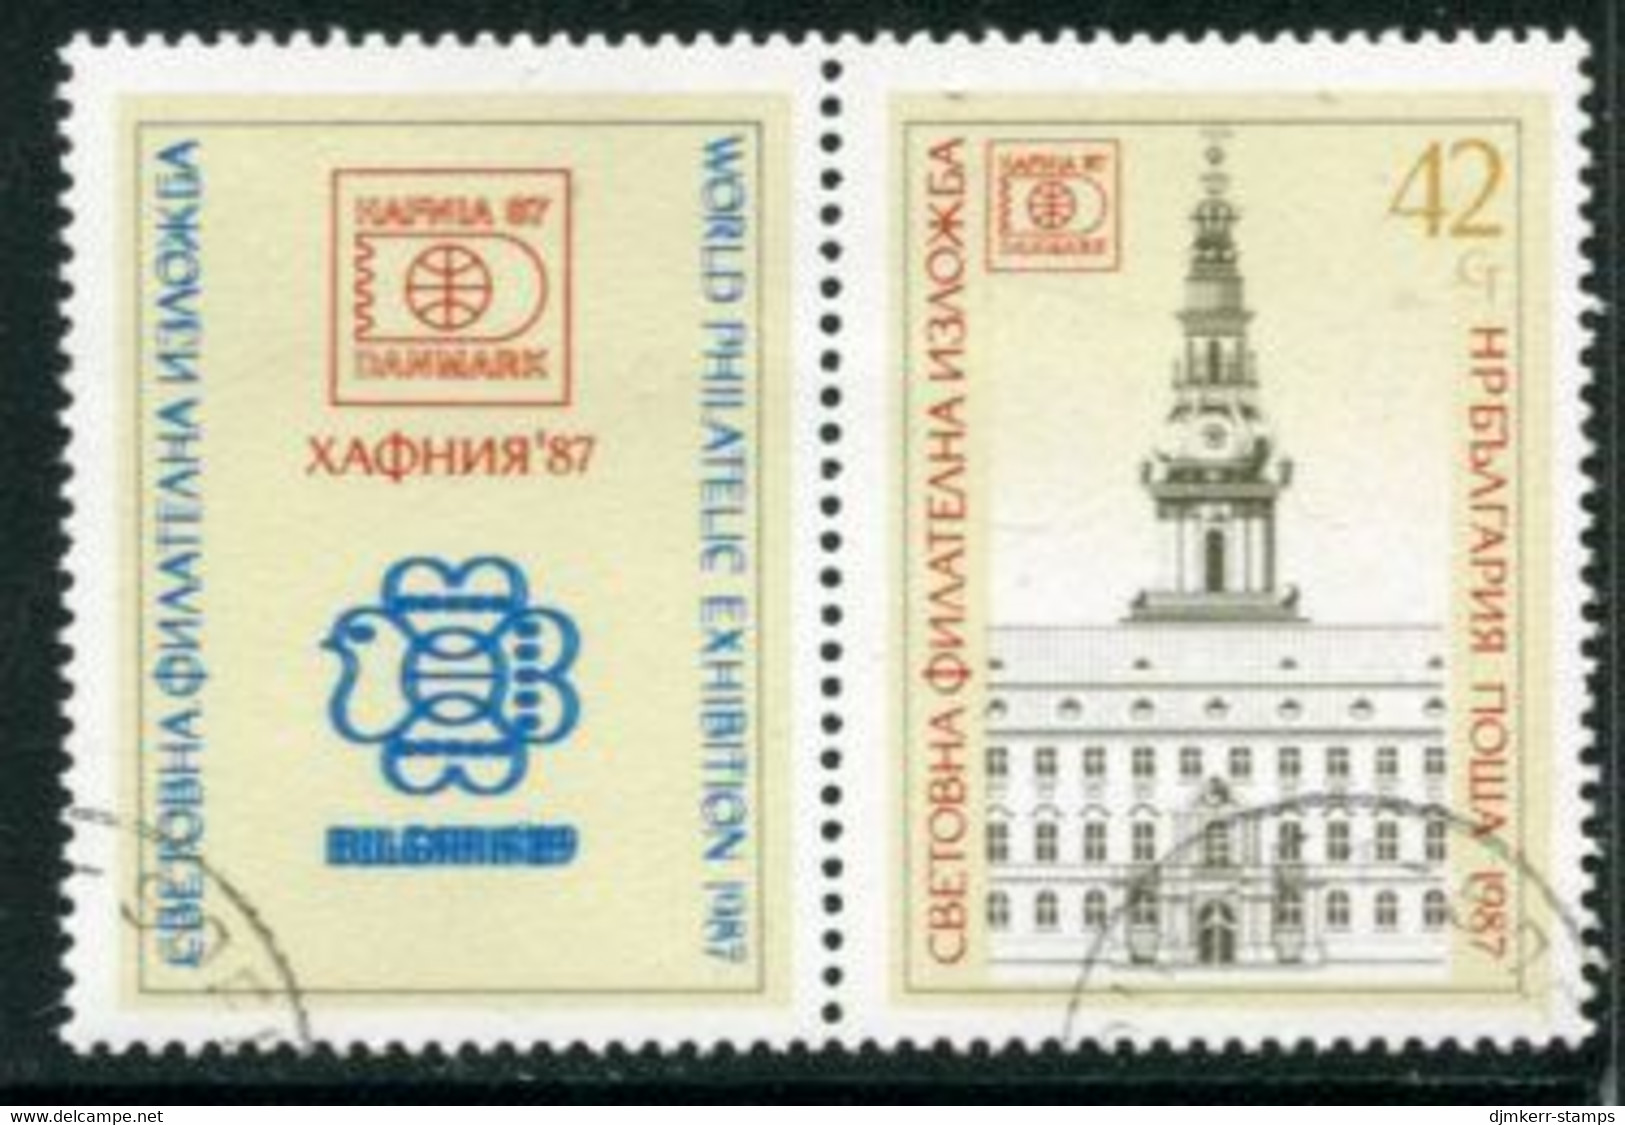 BULGARIA 1987 HAFNIA Stamp Exhibition Used.  Michel 3597 Zf - Usati